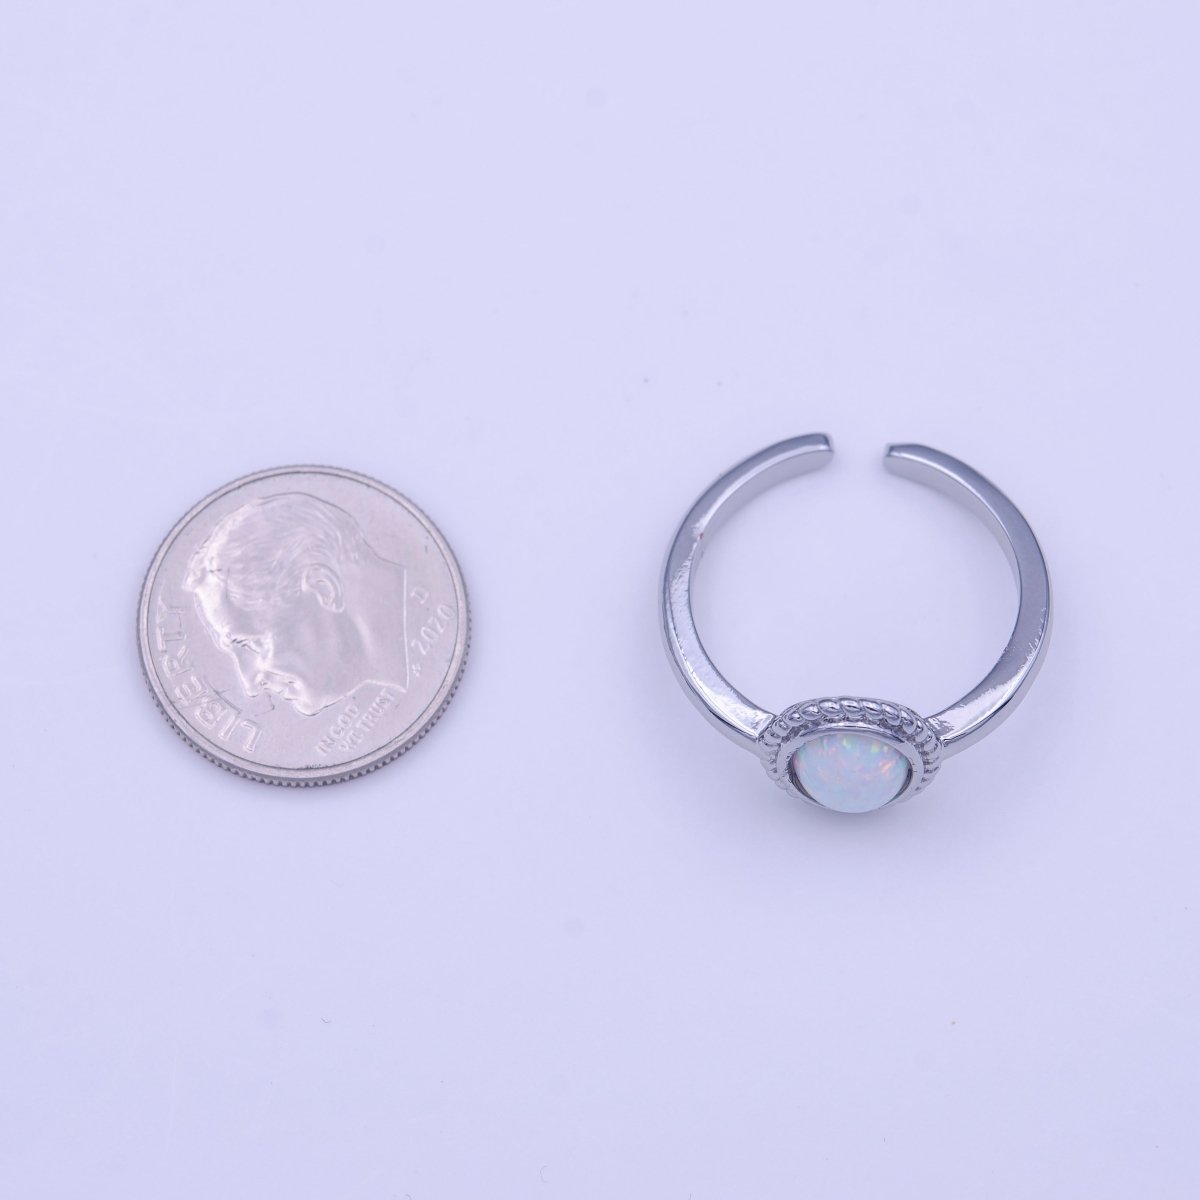 White Opal Braided Oval Minimalist Silver Ring | Y-426 - DLUXCA